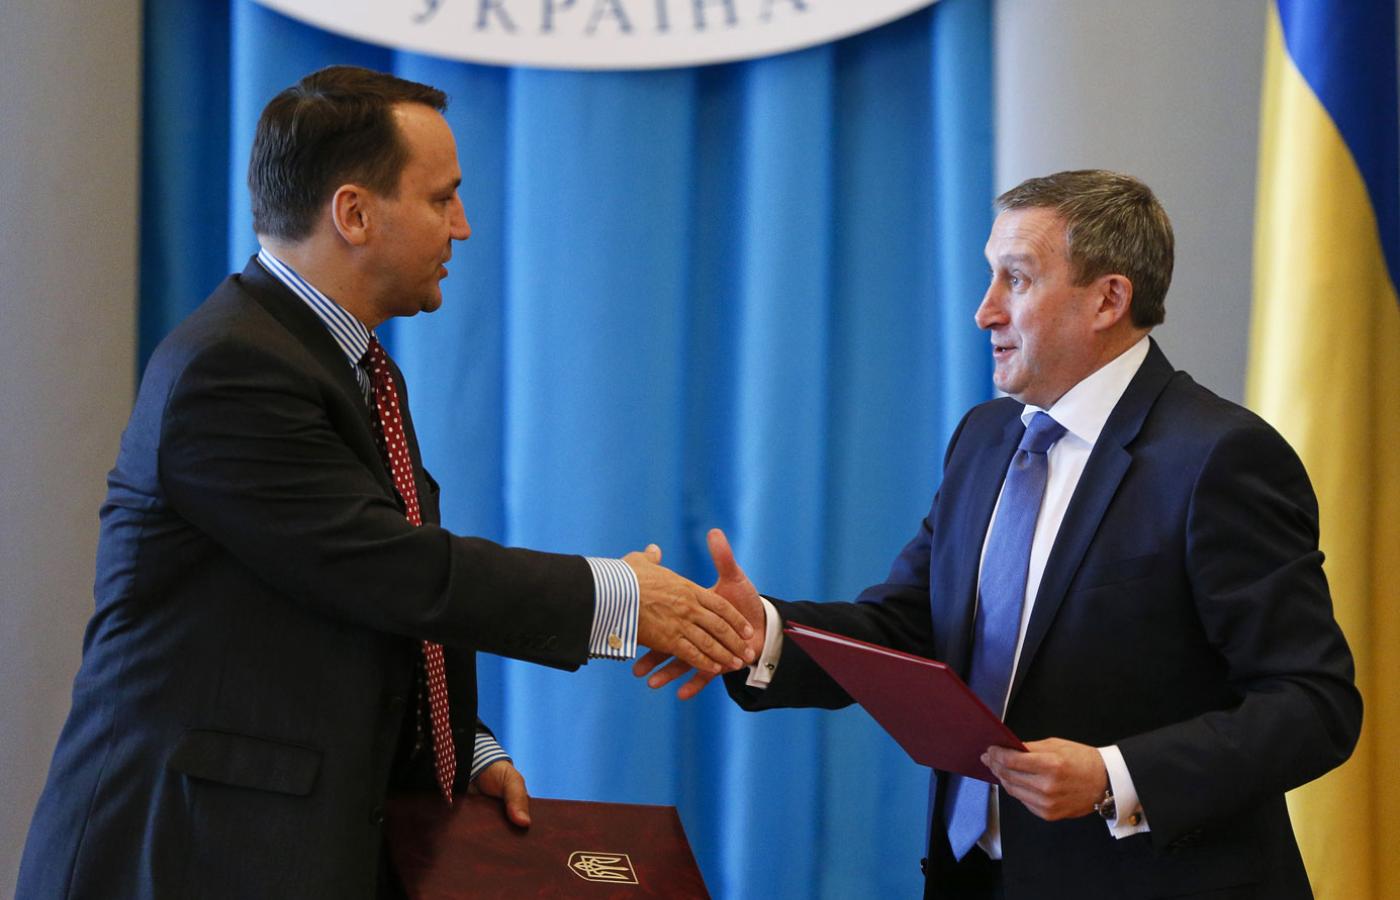 Ministrowie dyplomacji: Radosław Sikorski i Andrij Deszczycia podczas spotkania w Kijowie, 16 maja 2014 r.